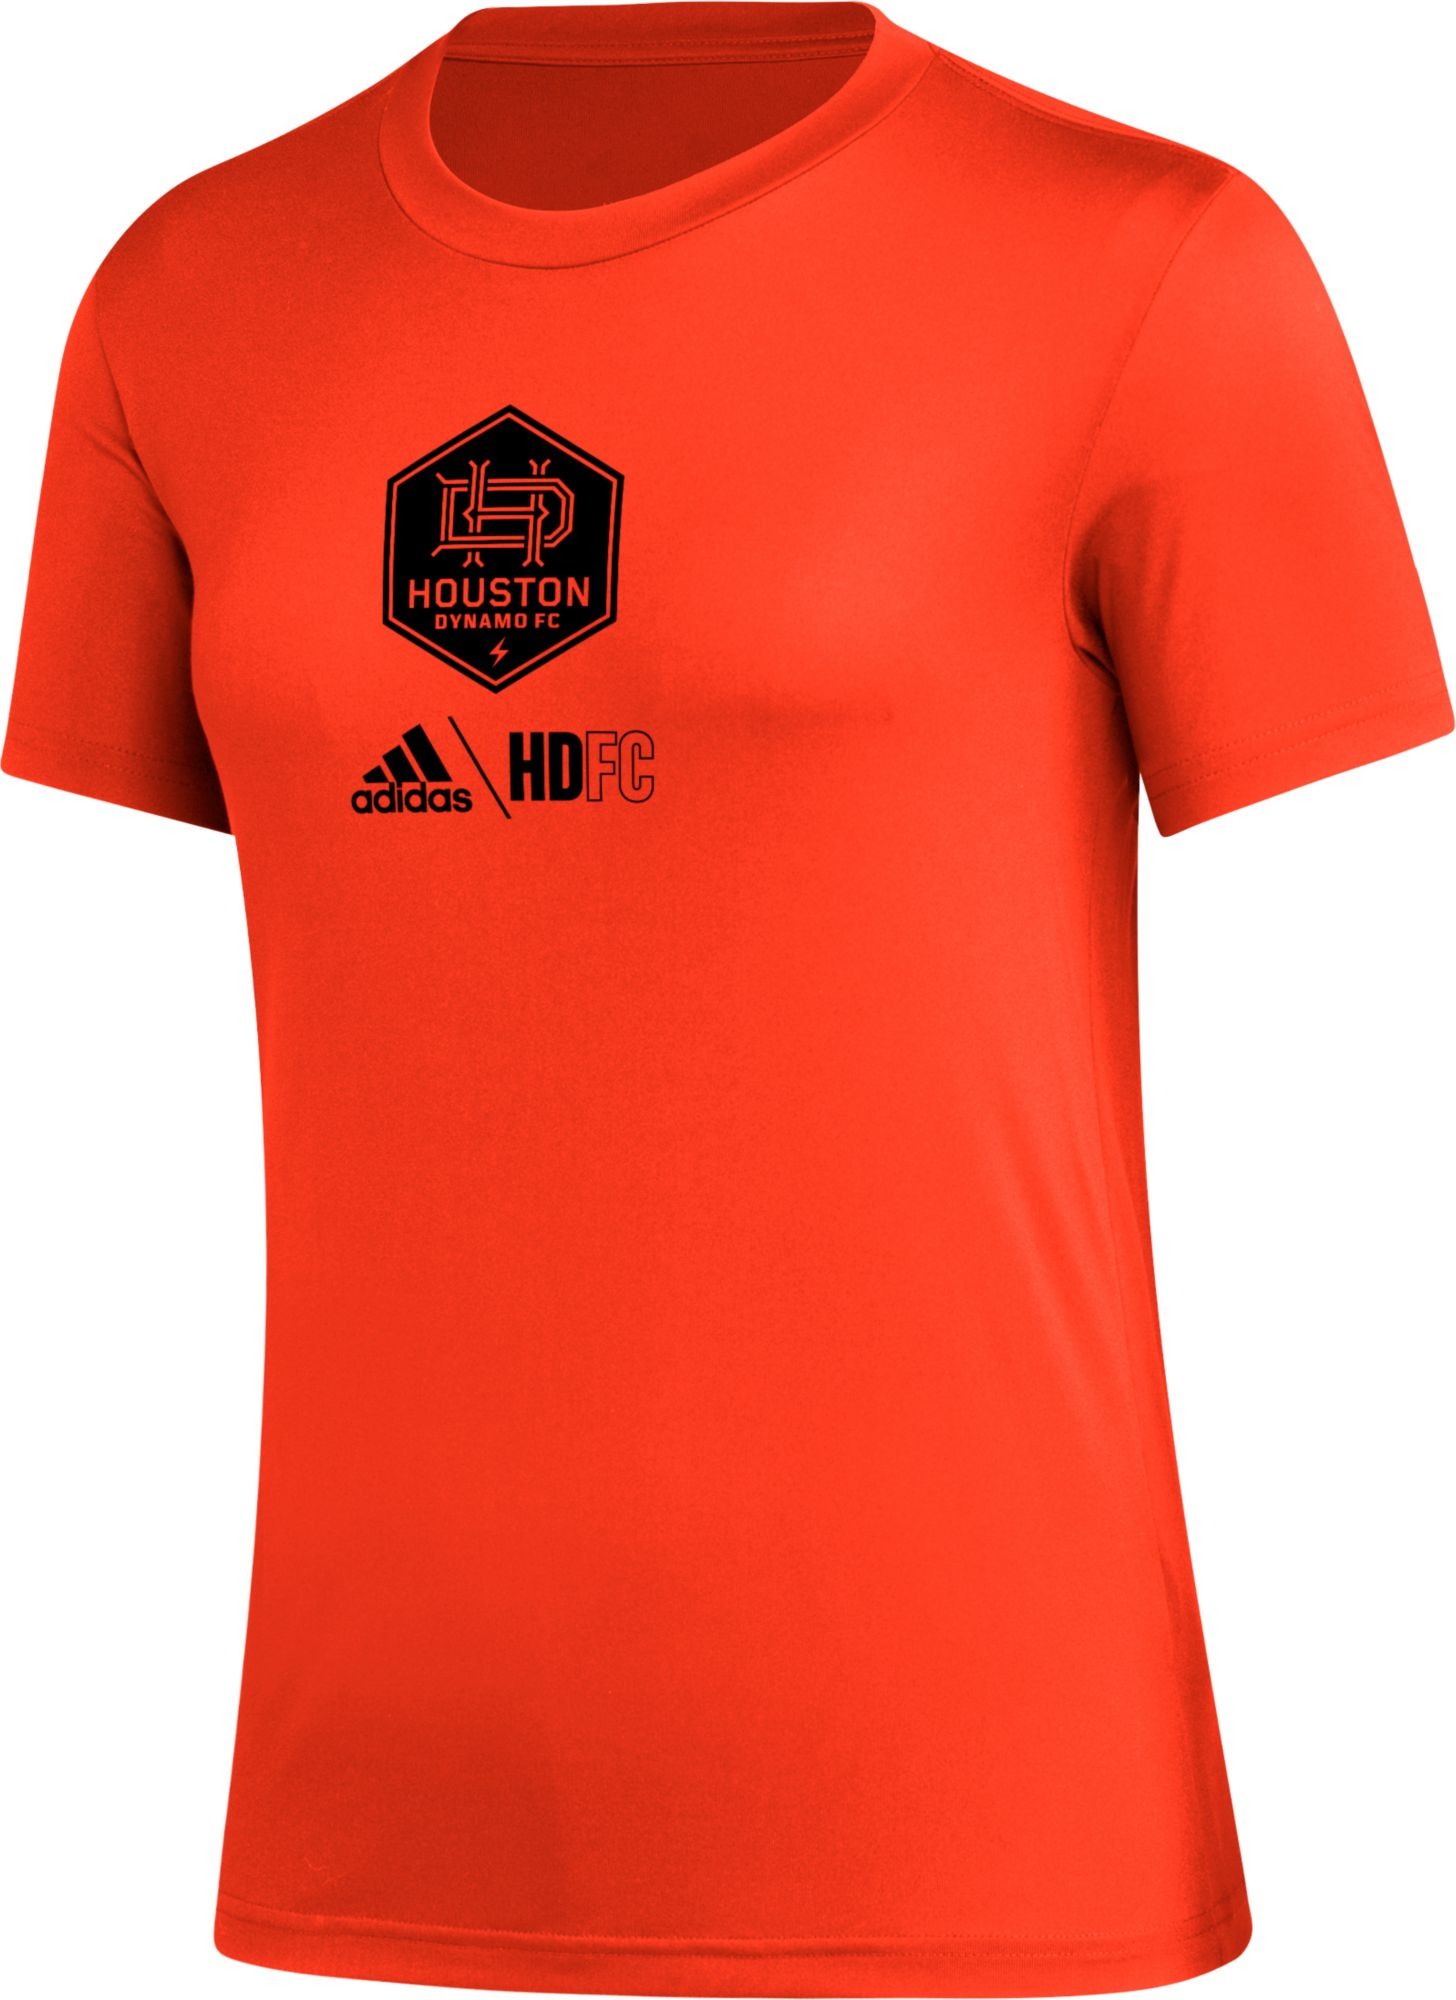 adidas Women's Houston Dynamo Icon Orange T-Shirt, XL